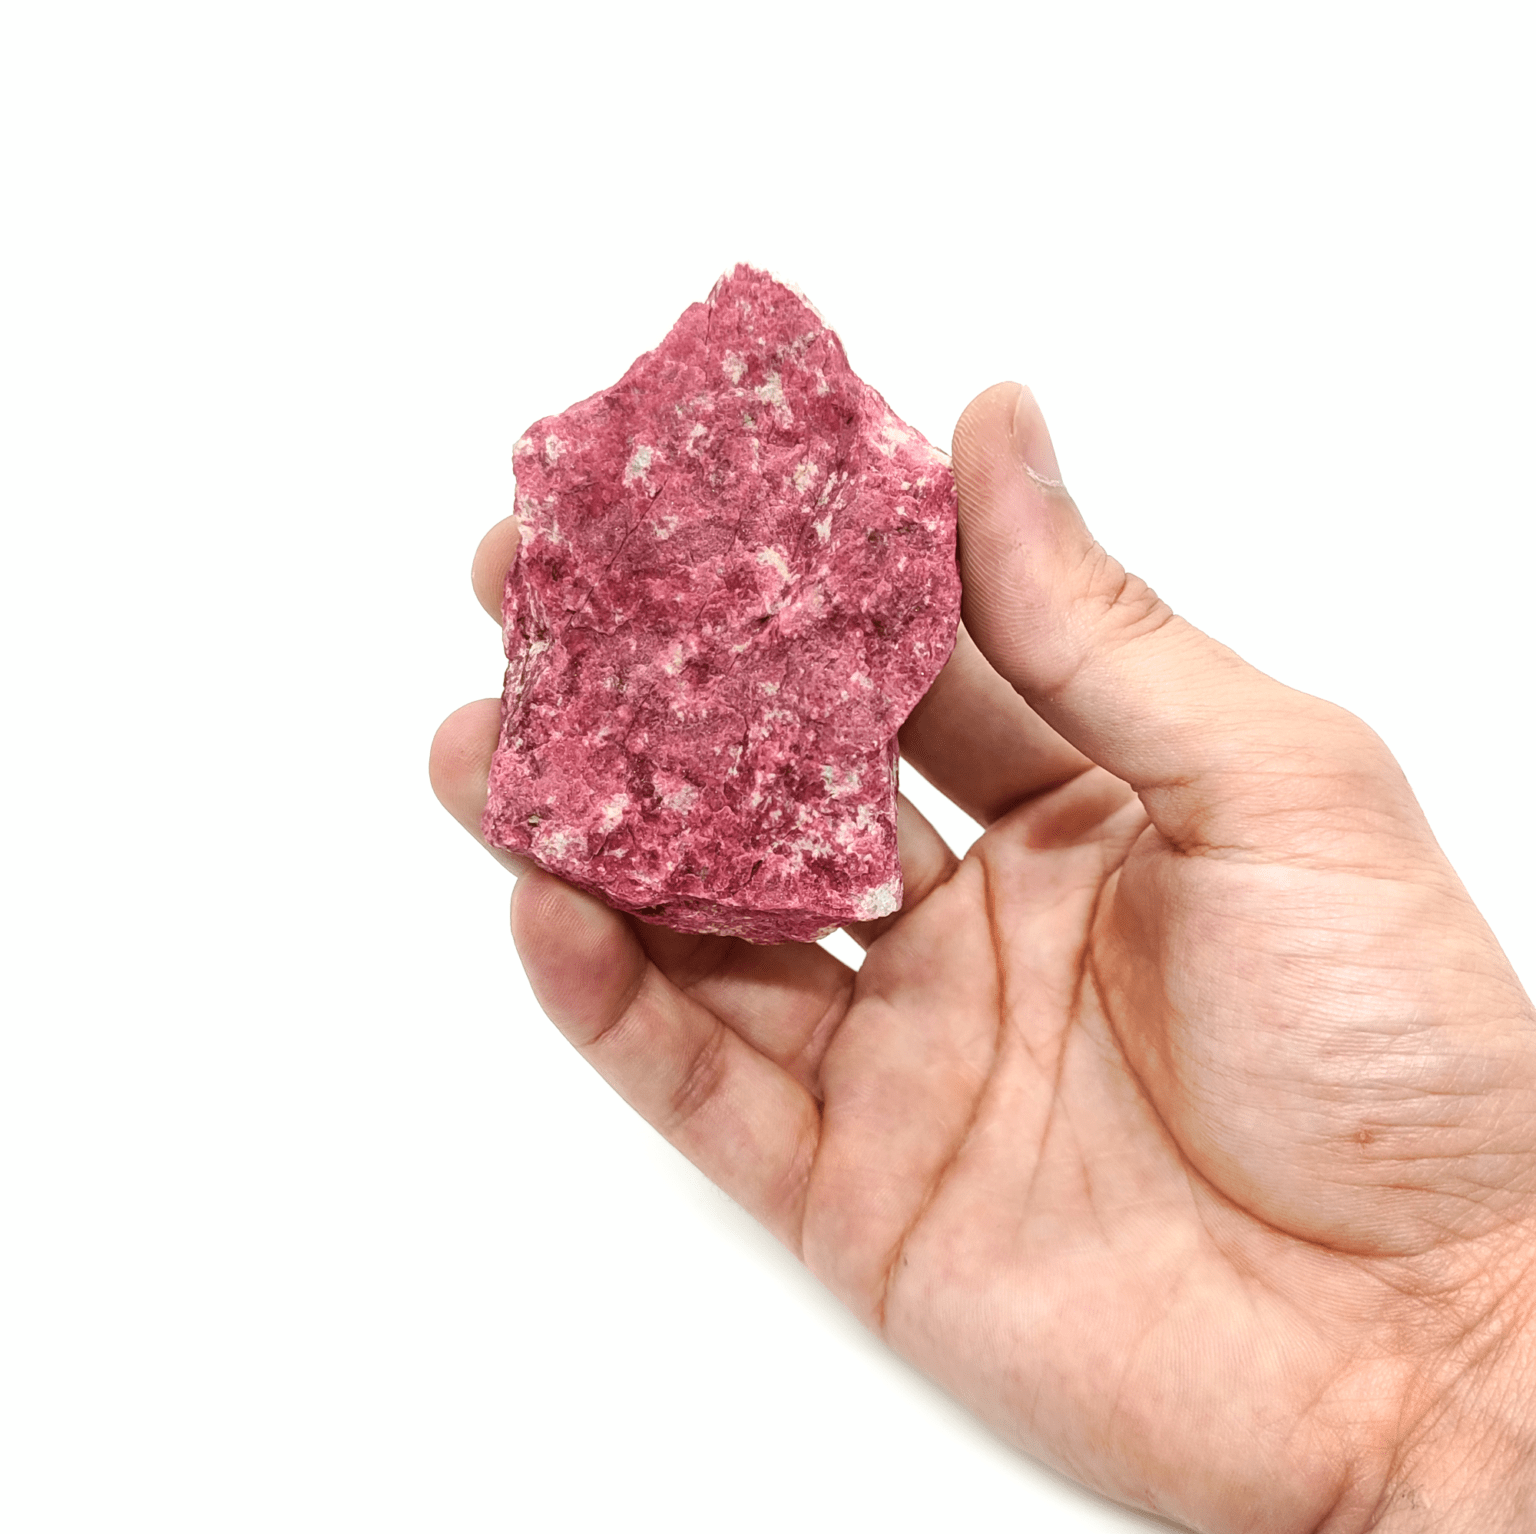 Produktbeispiel eines großen Thulit Rohsteins, welcher hier online gekauft werden kann. Der Edelstein ist intensiv rosa.